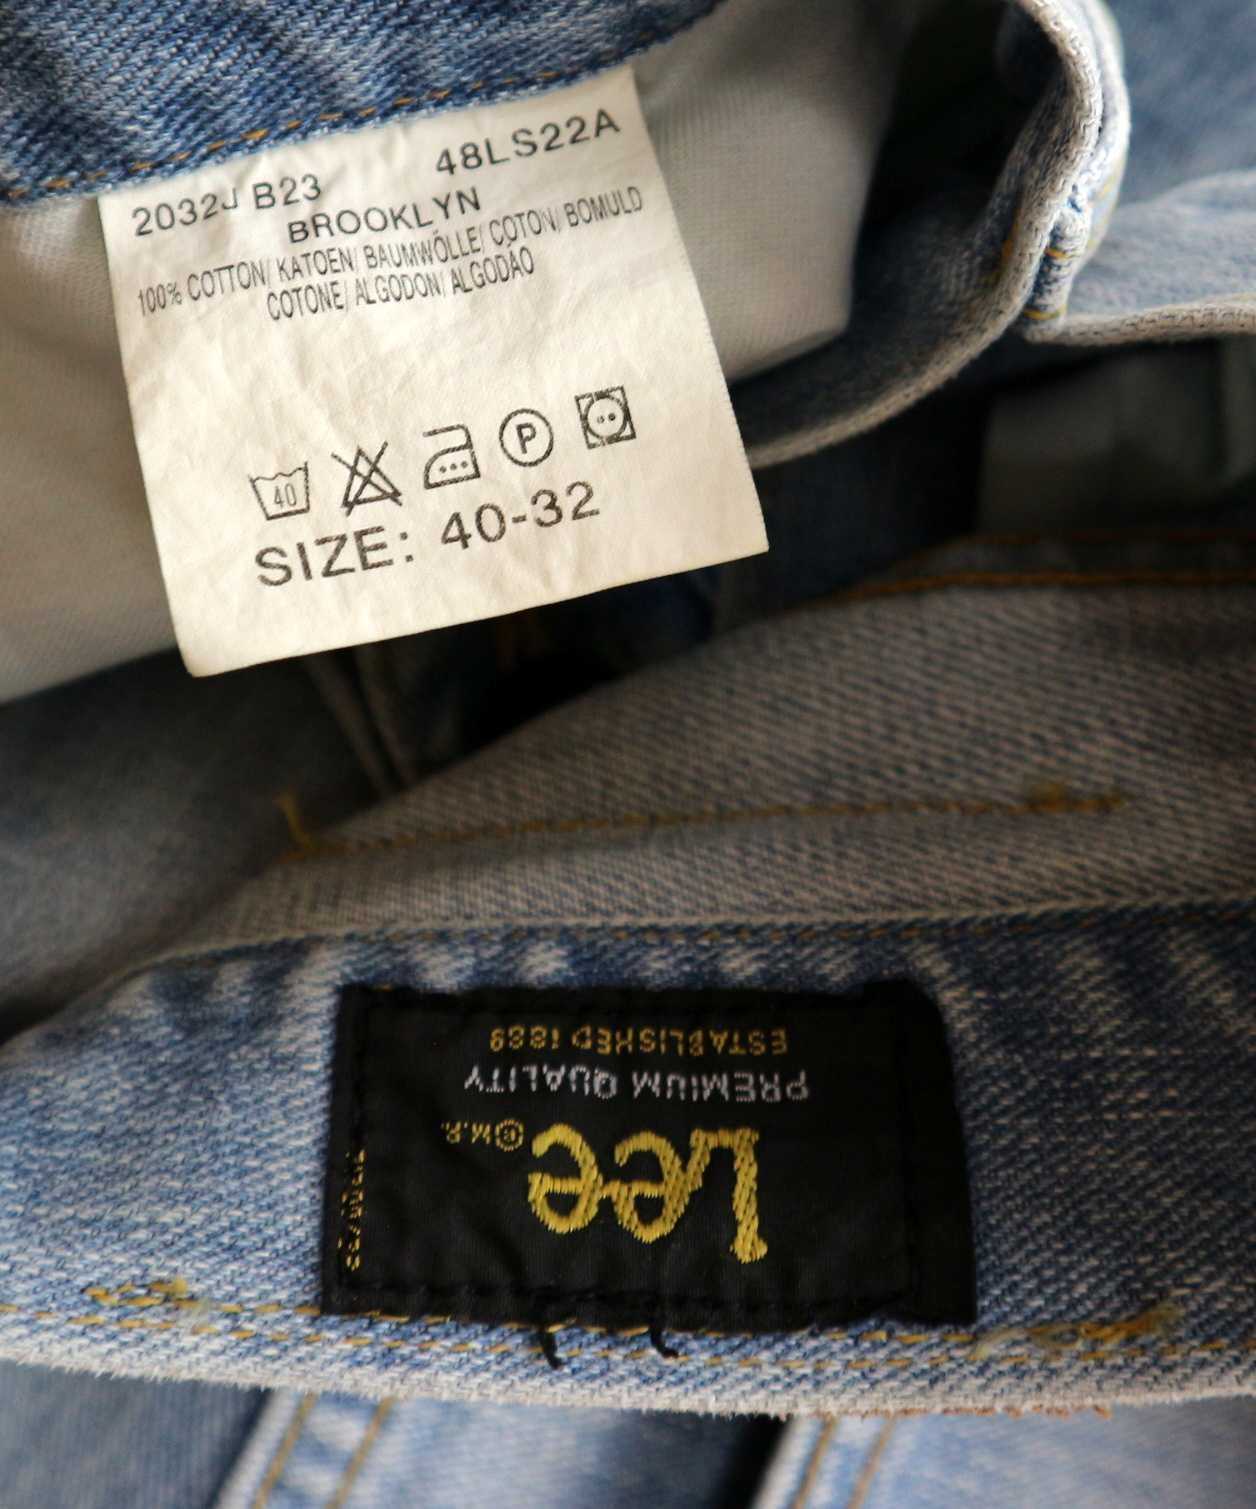 Lee Brooklyn spodnie jeansy W40 L32 pas 2 x 52 cm